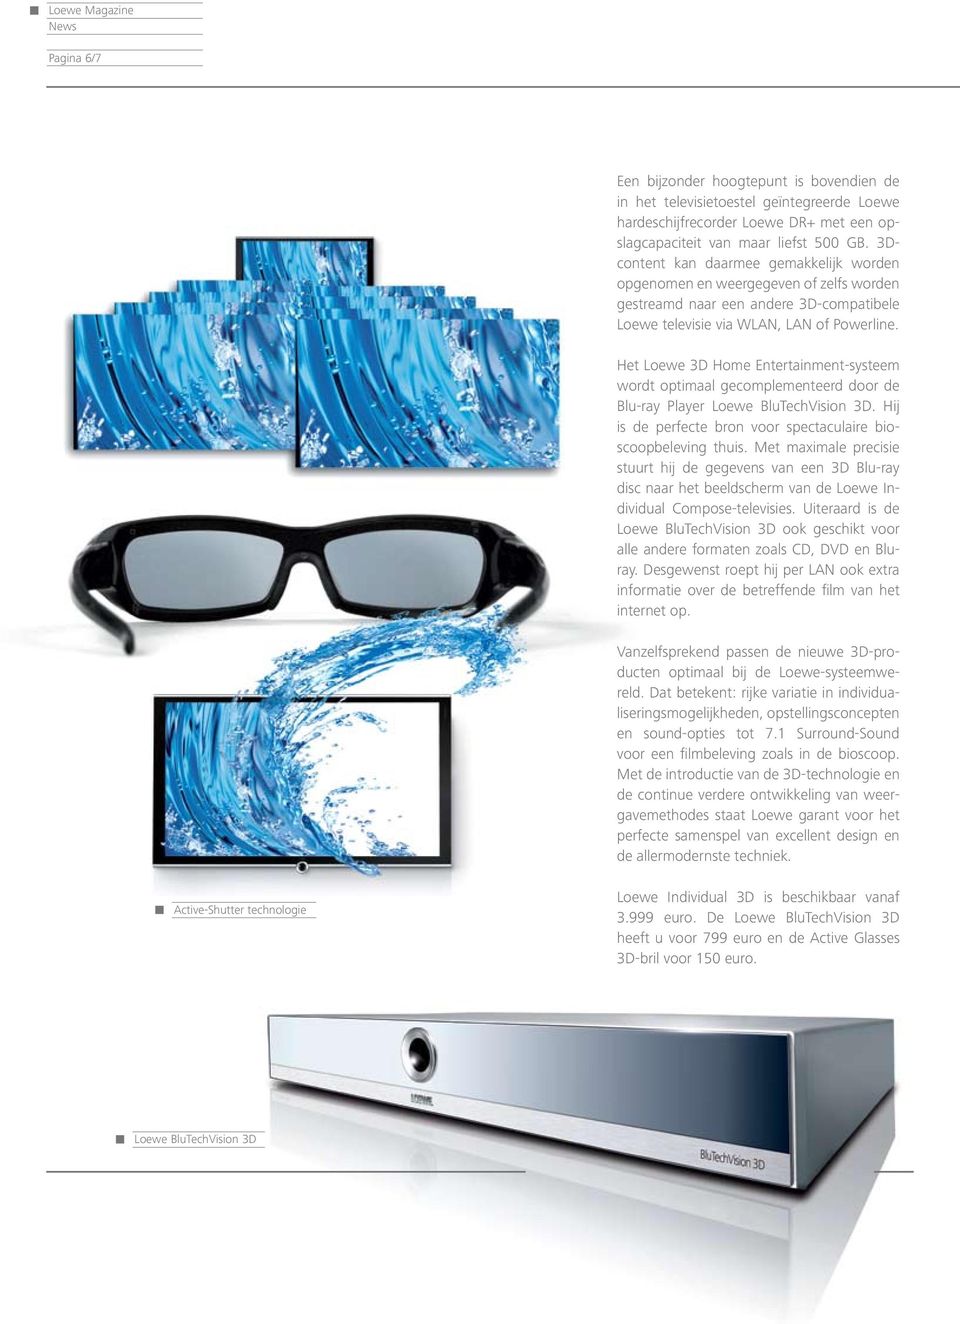 Het Loewe 3D Home Entertainment-systeem wordt optimaal gecomplementeerd door de Blu-ray Player Loewe BluTechVision 3D. Hij is de perfecte bron voor spectaculaire bioscoopbeleving thuis.